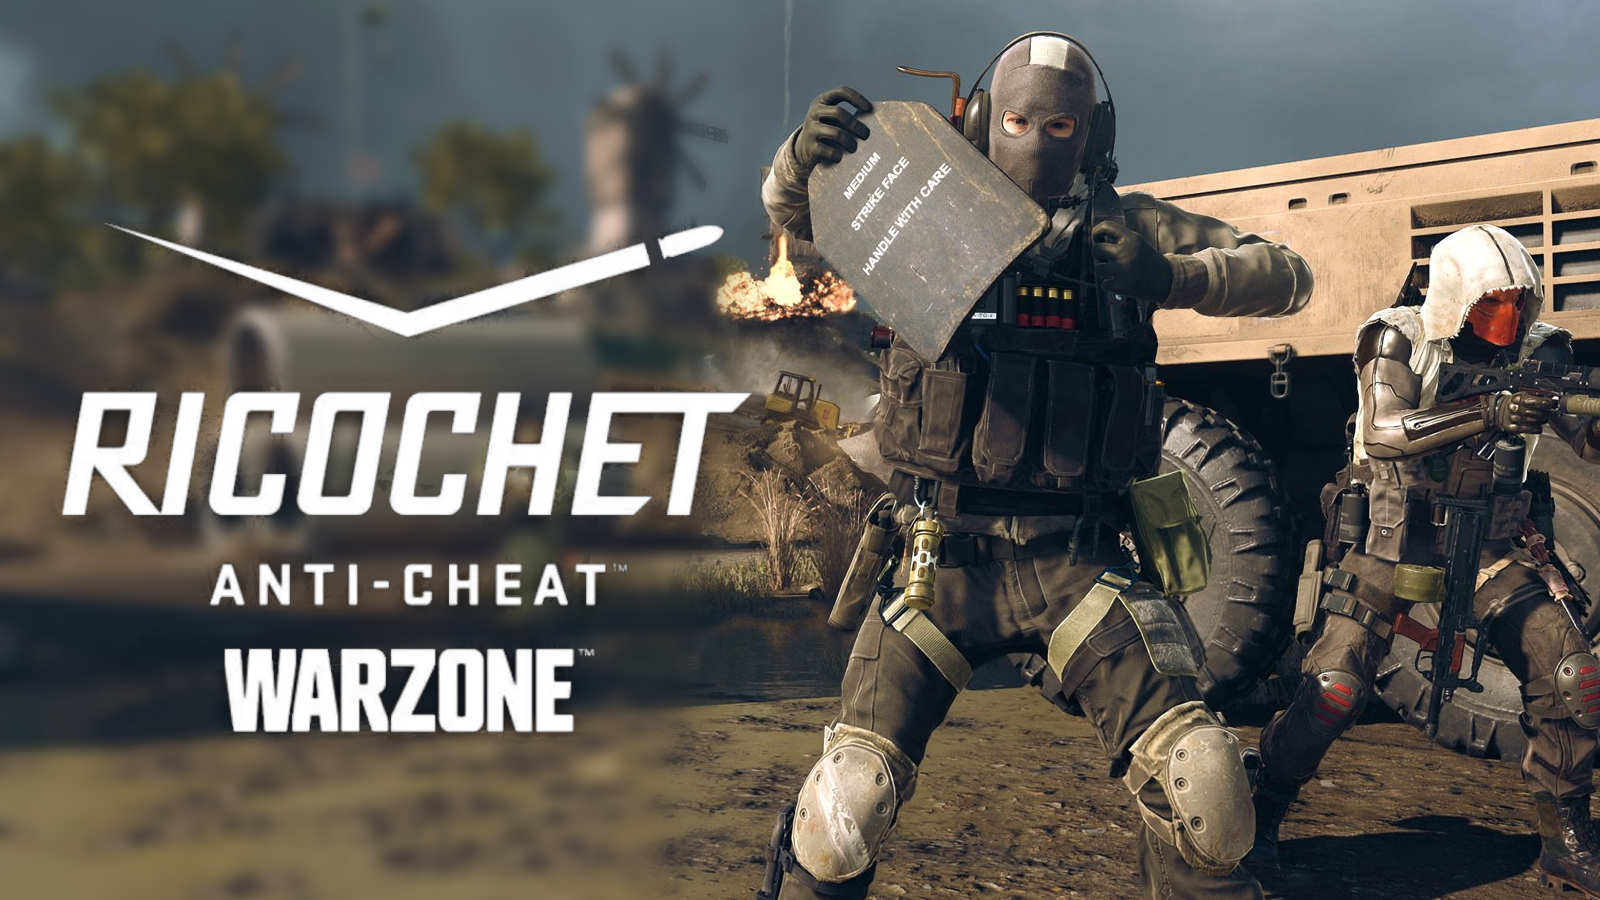 Không chống lại được cheater, Warzone tự ứng dụng tính năng "gian lận" bảo vệ người chơi trong sạch